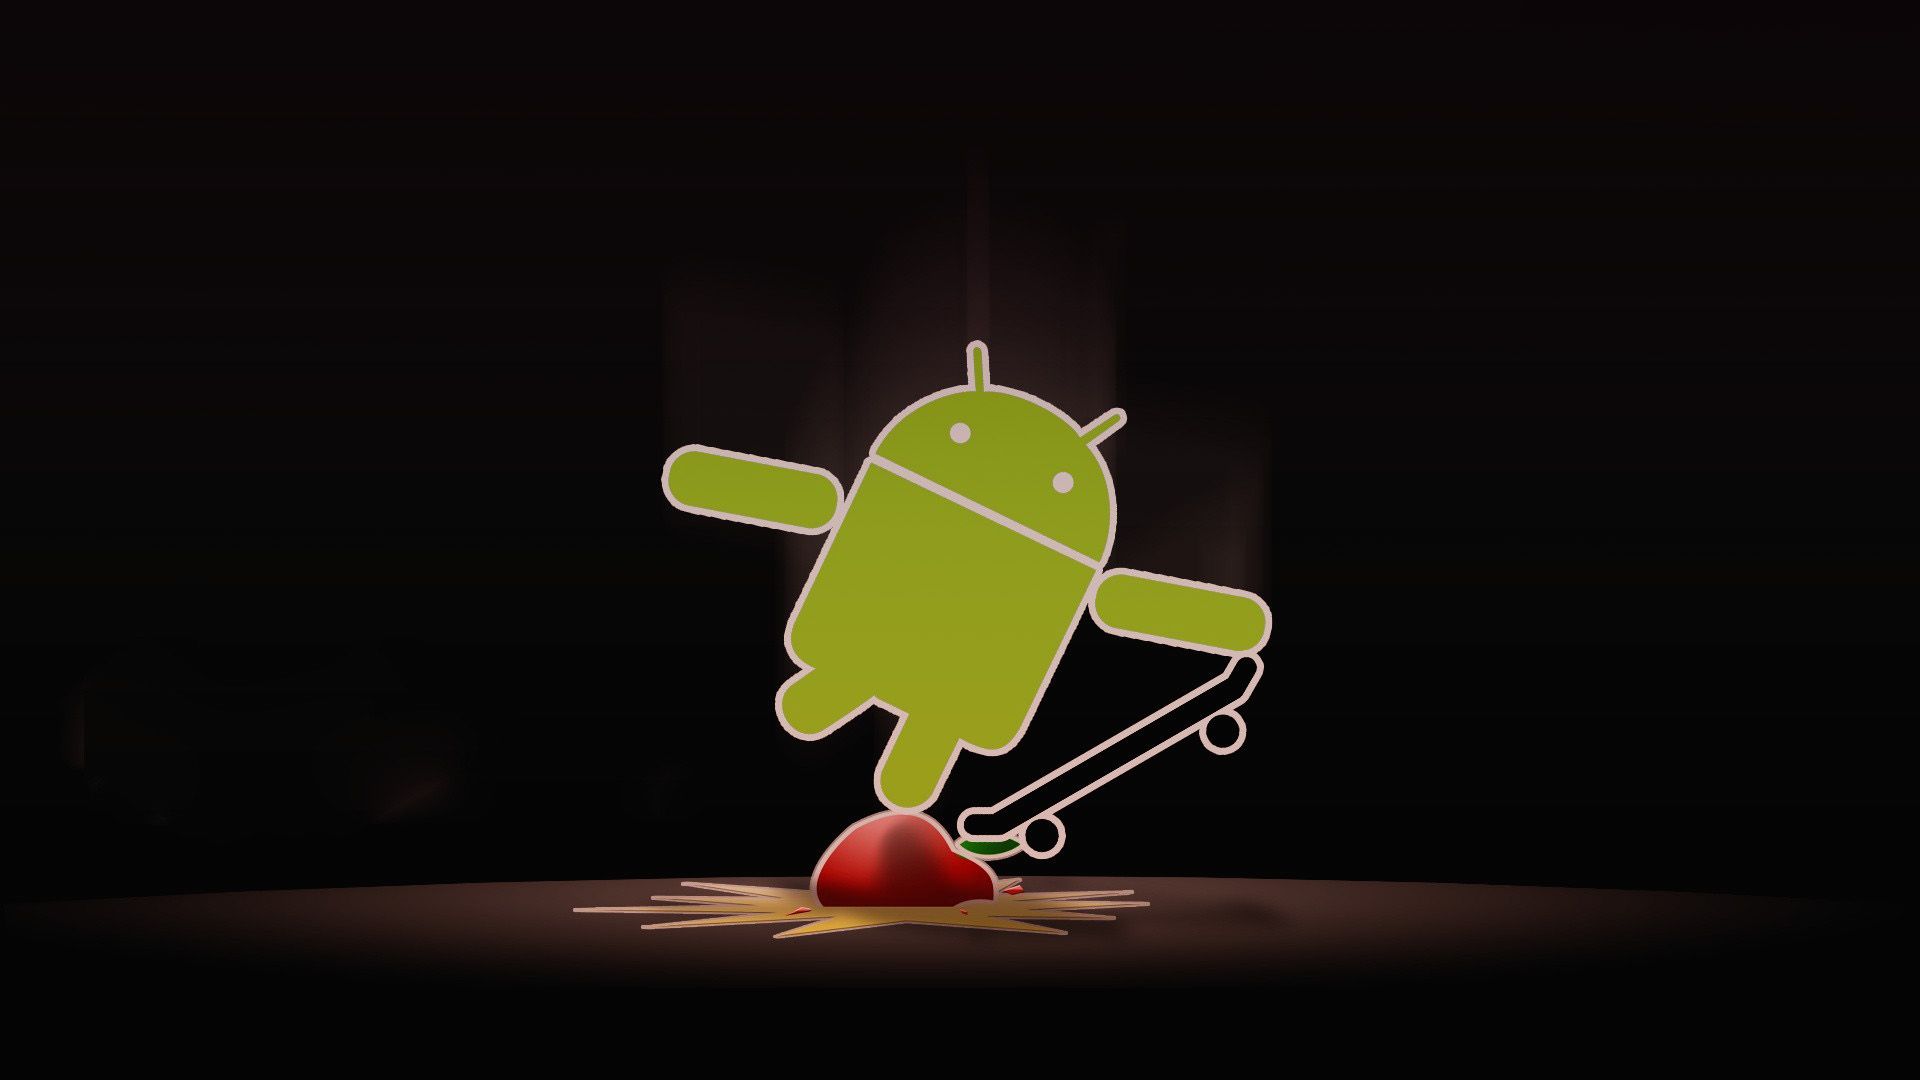 Apple con Android Skate Wallpaper 114 Fondo de pantalla | WallpaperLepi